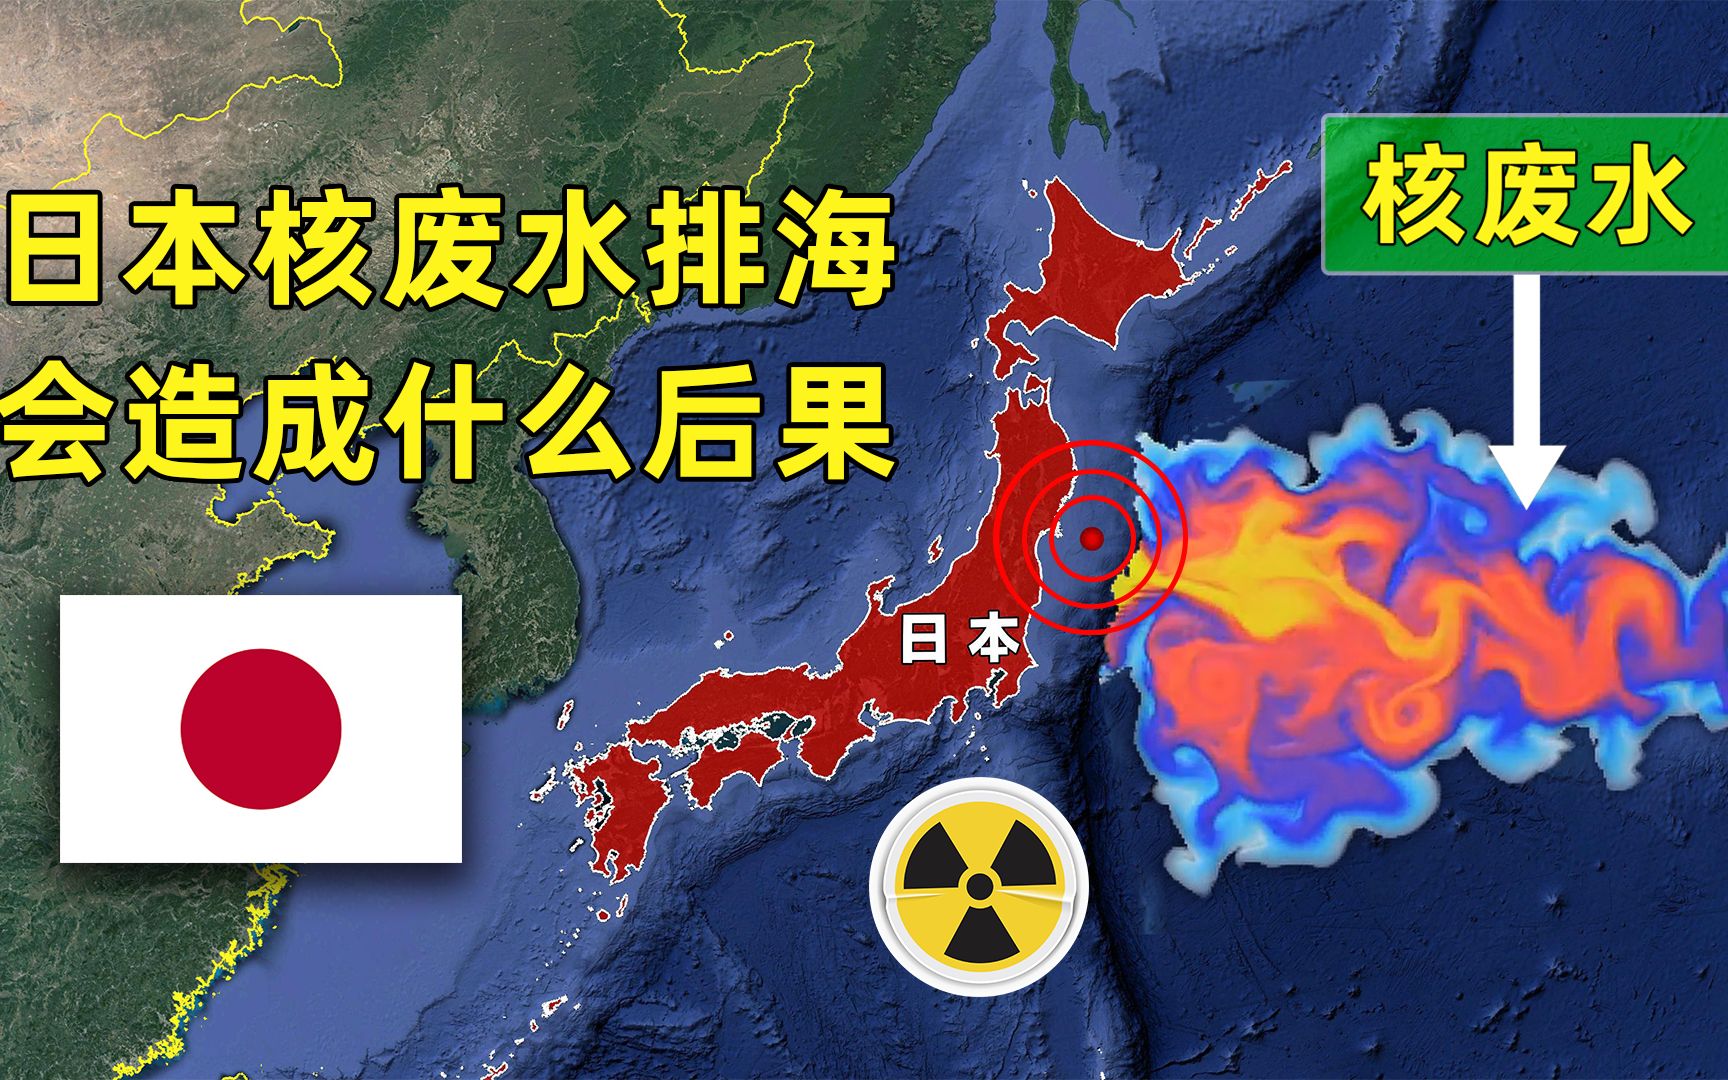 日本不顾国际反对,决定将核废水排入太平洋,会造成什么后果?